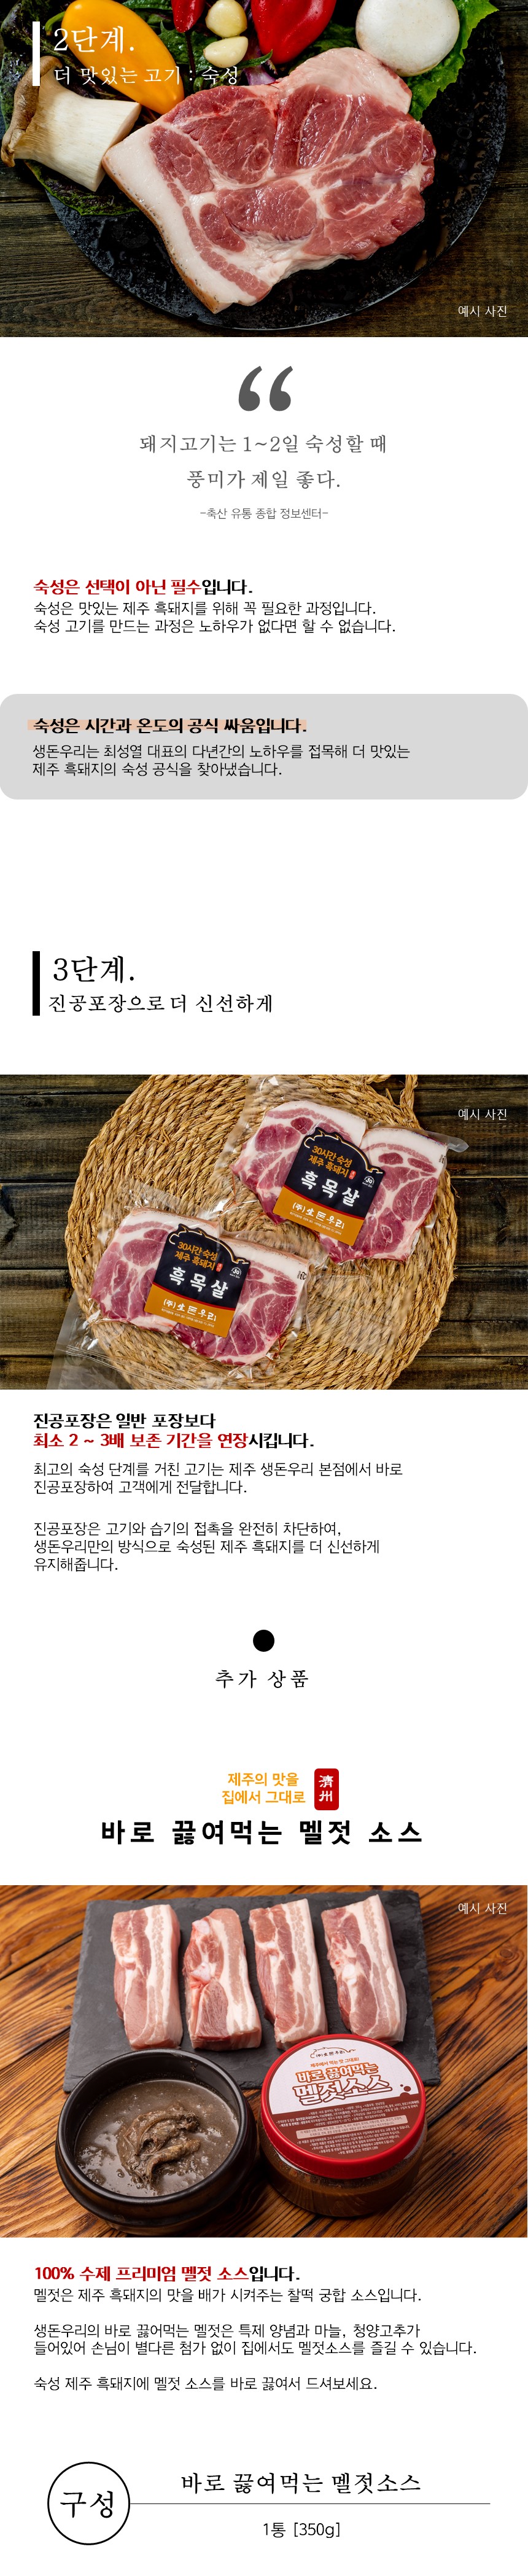 [냉장]30숙성 제주 흑돼지 목살 500g 상세